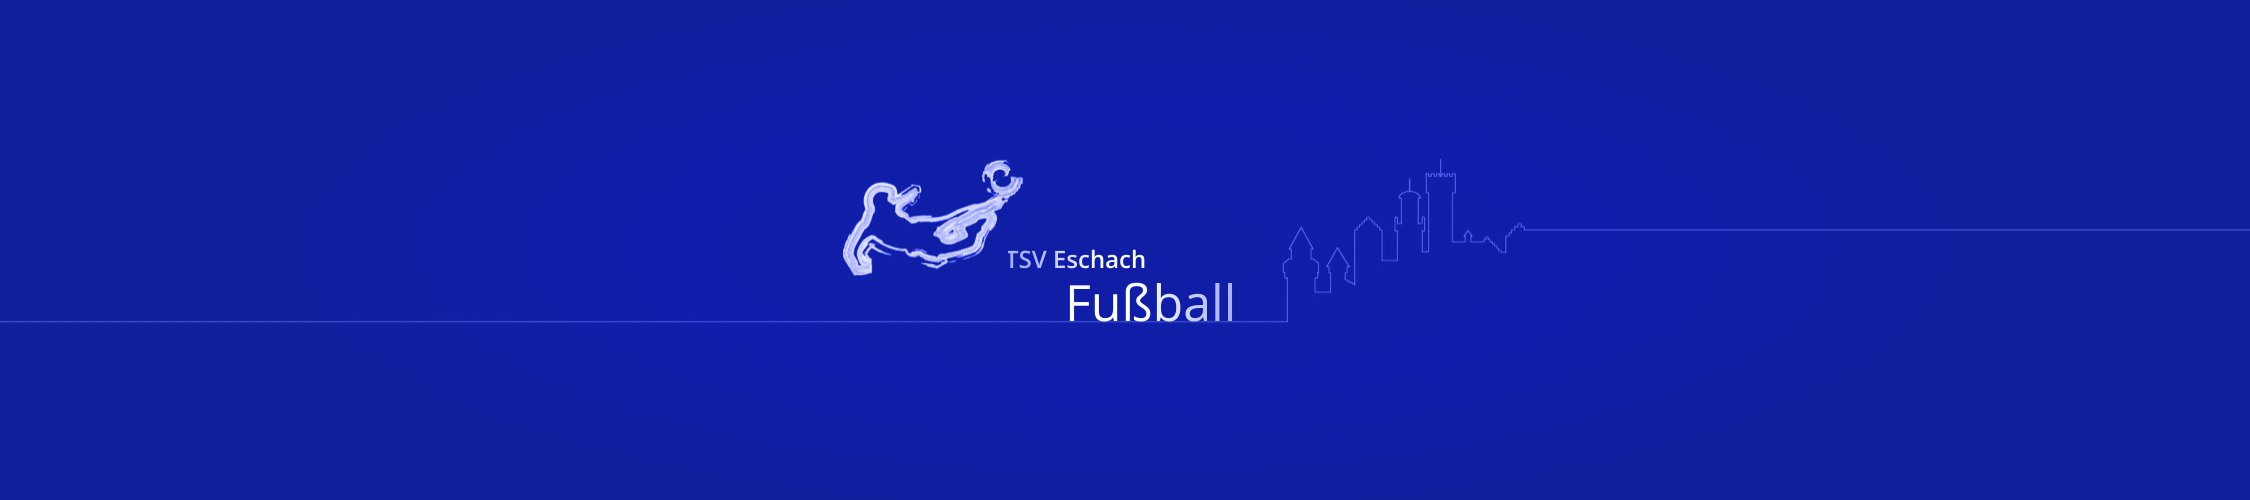 TSV-Eschach Fussball